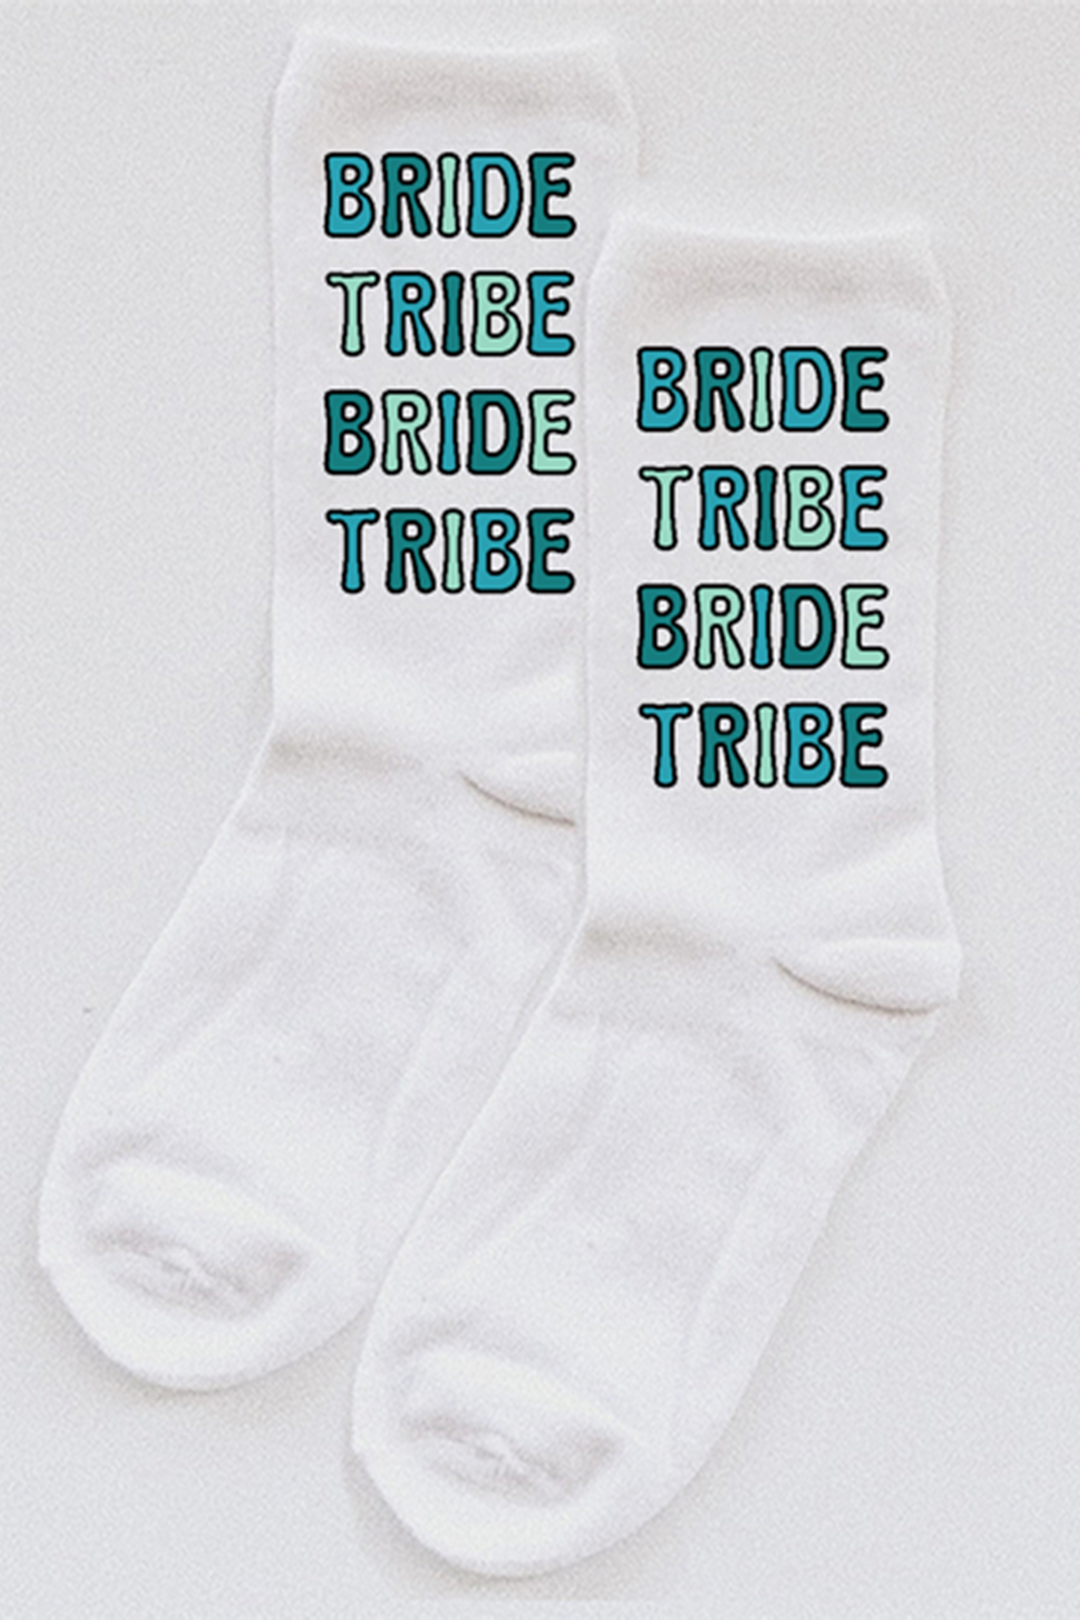 Bride Tribe Bubble Letter socks - choose your colors!